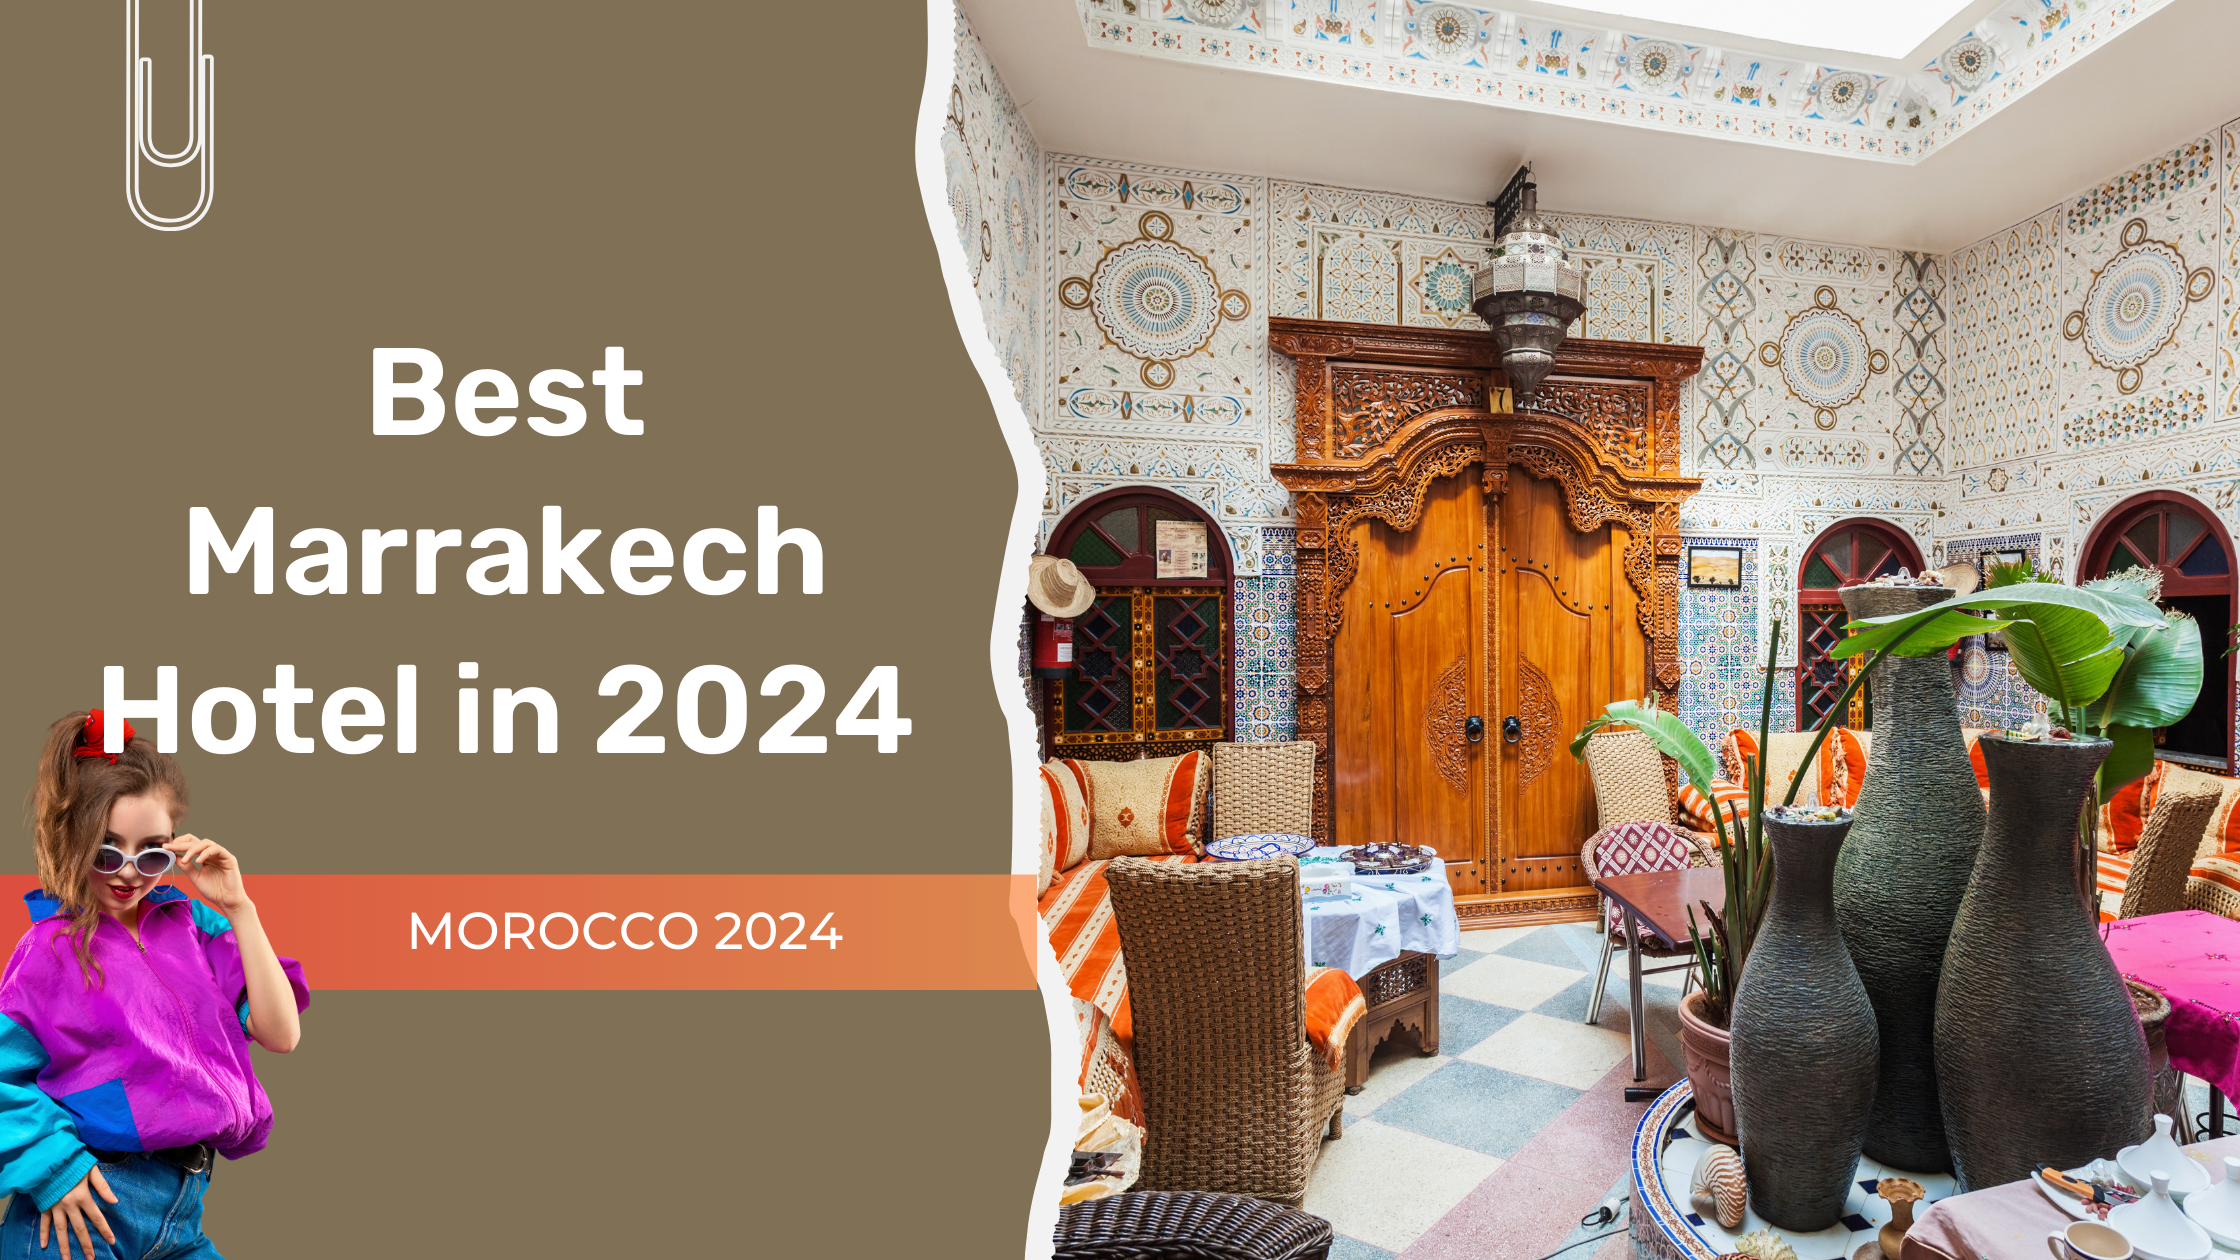 Best Marrakech Hotel in 2024